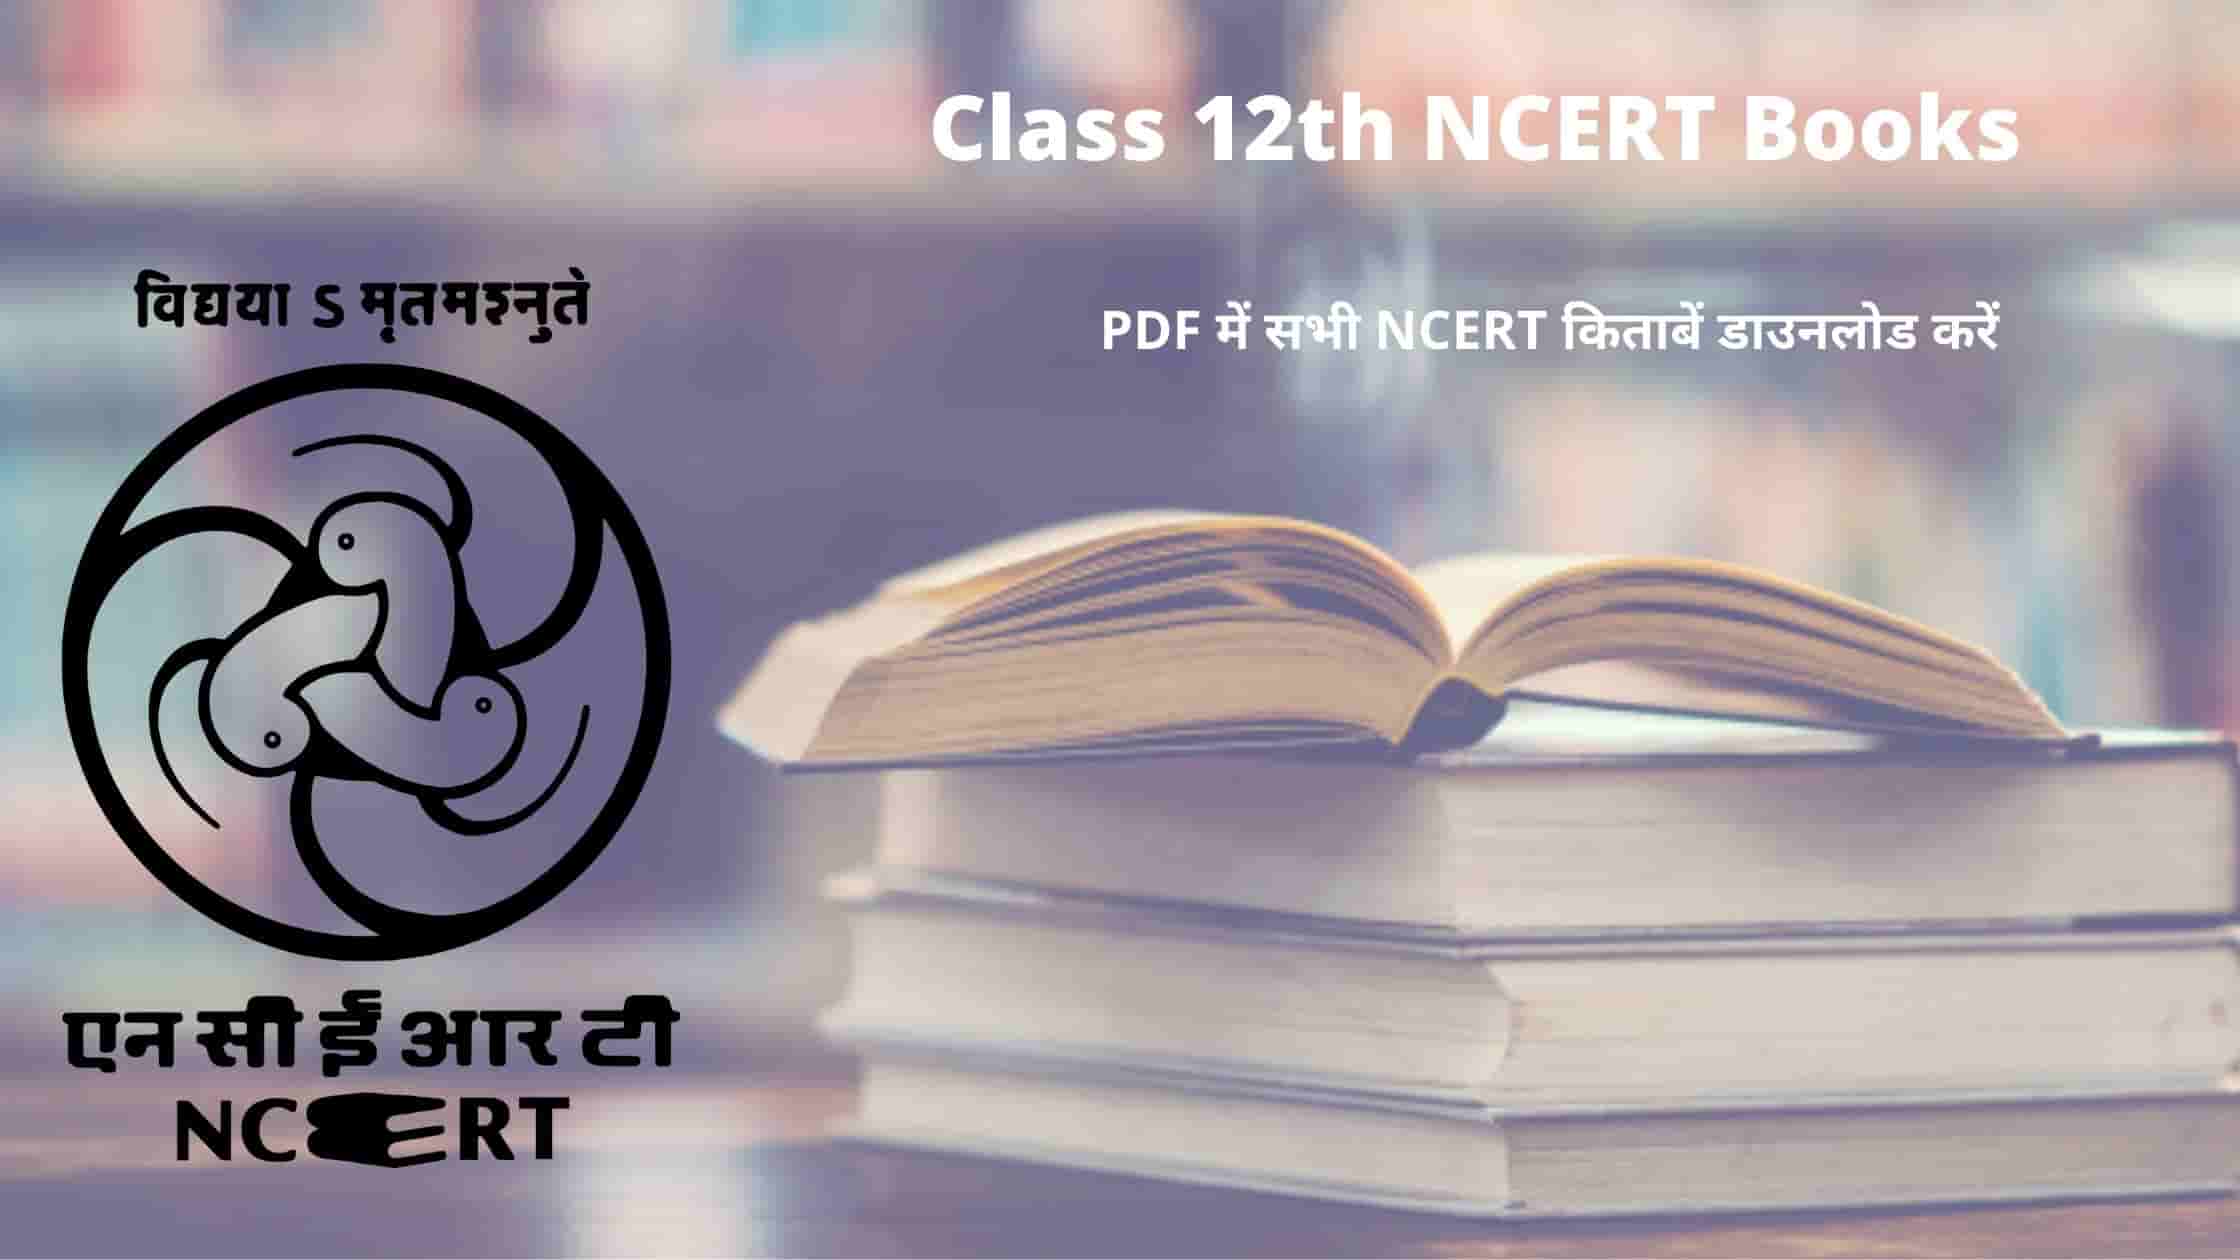 Class 12th NCERT Books